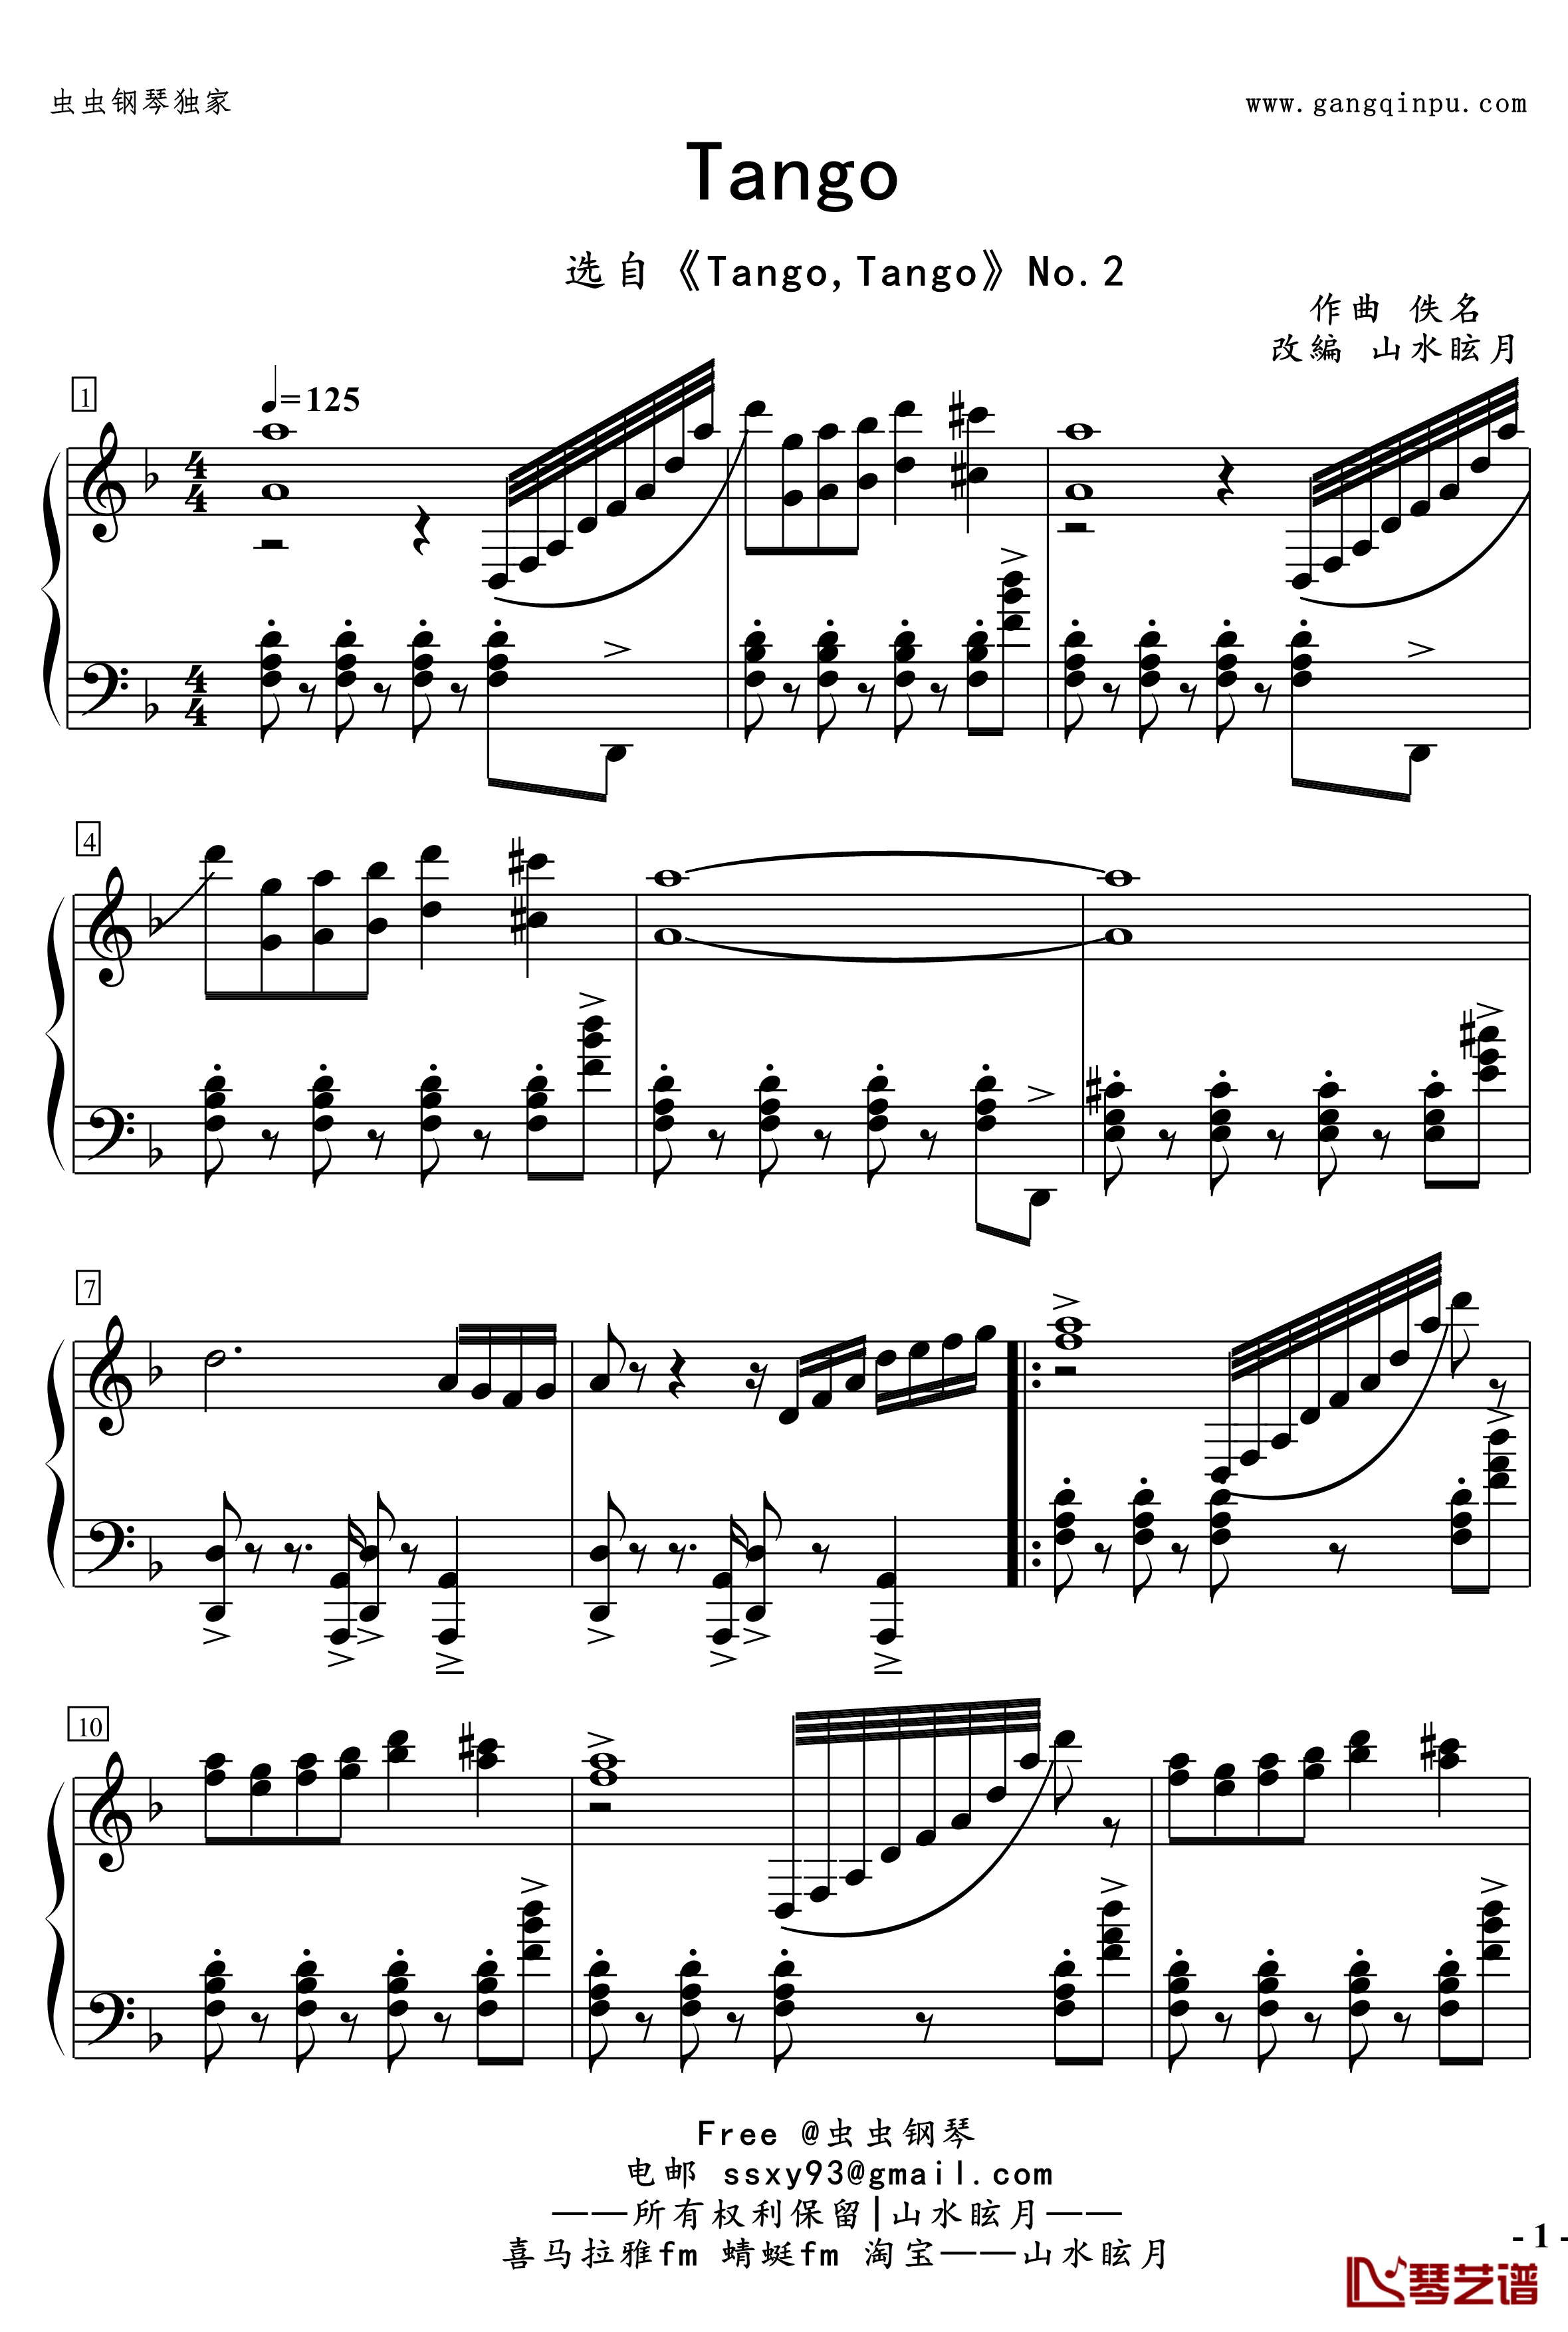 No.2無名探戈钢琴谱-修订-jerry57431